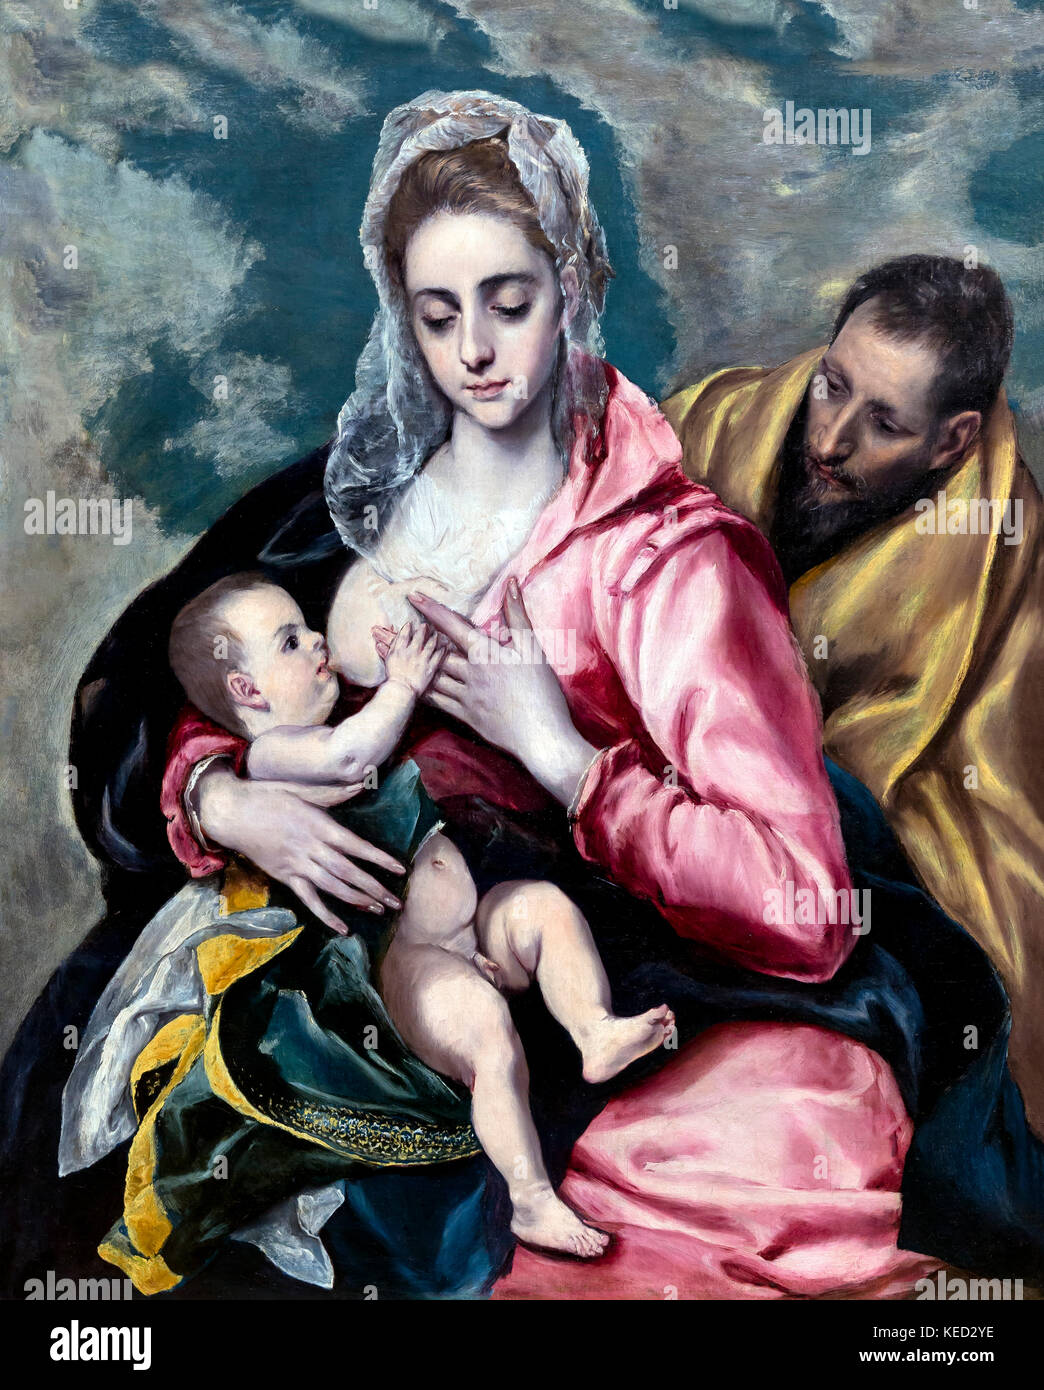 La Sainte famille, El Greco, vers 1585, Metropolitan Museum of Art, Manhattan, New York City, Etats-Unis, Amérique du Nord Banque D'Images